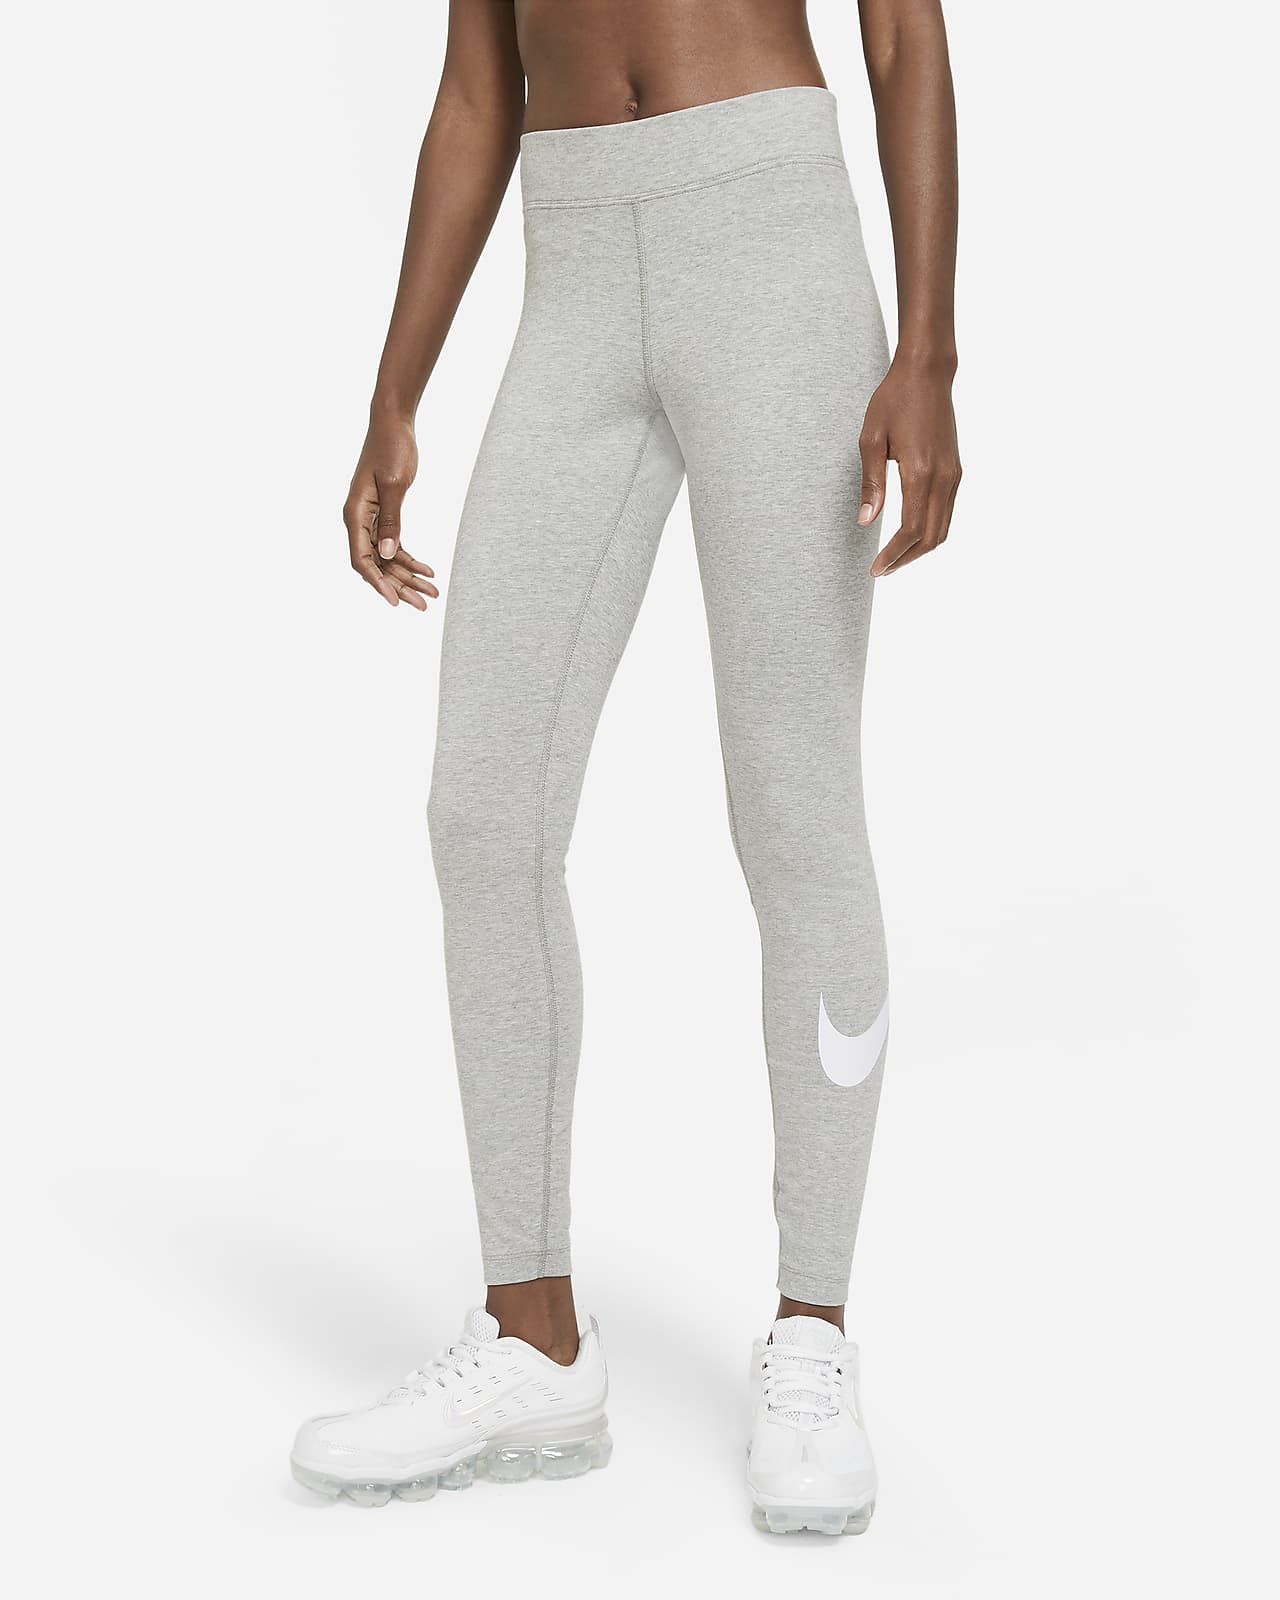 Damskie legginsy ze średnim stanem i logo Swoosh Nike Sportswear